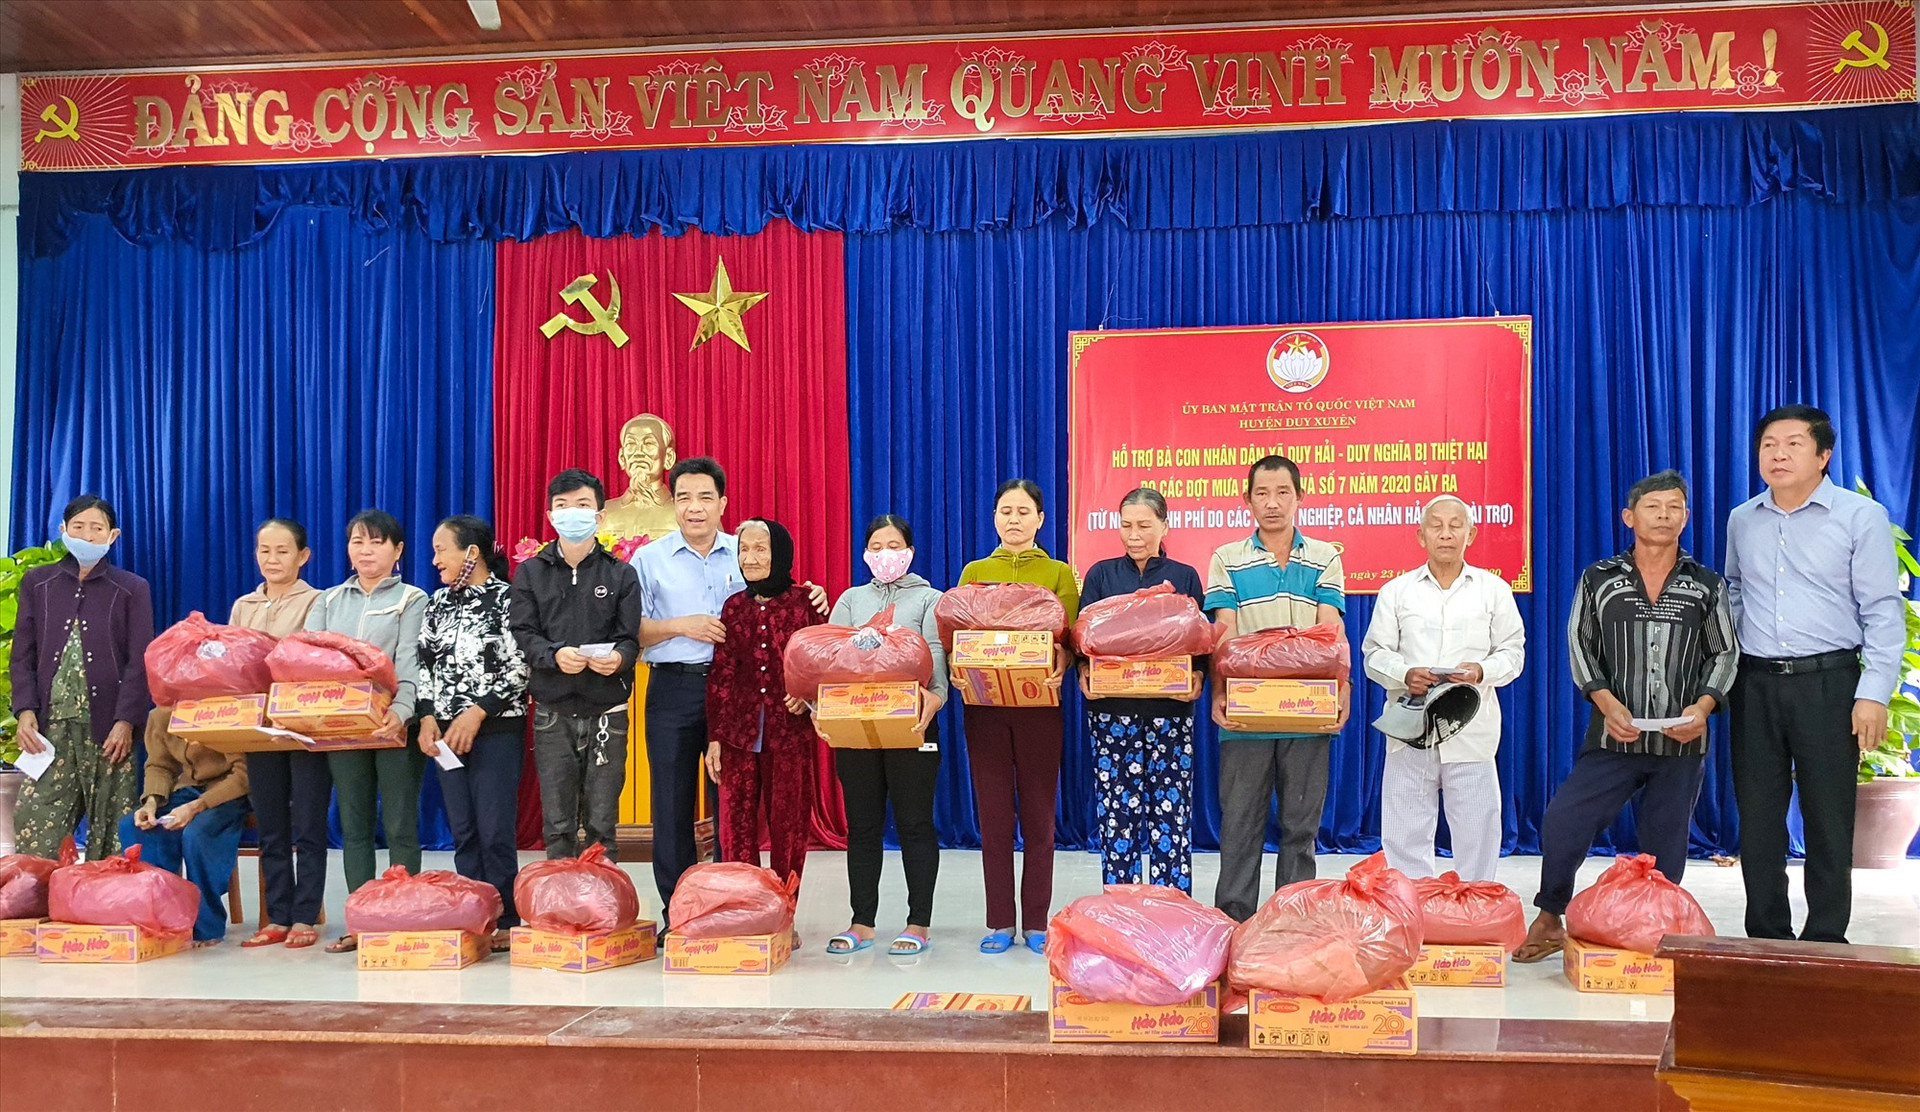 150 hộ dân hai xã Duy Hải, Duy Nghĩa được nhận quà hỗ trợ khắc phục hậu quả mưa lũ gồm 1 triệu đồng tiền mặt cùng hiện vật. Ảnh: T.C